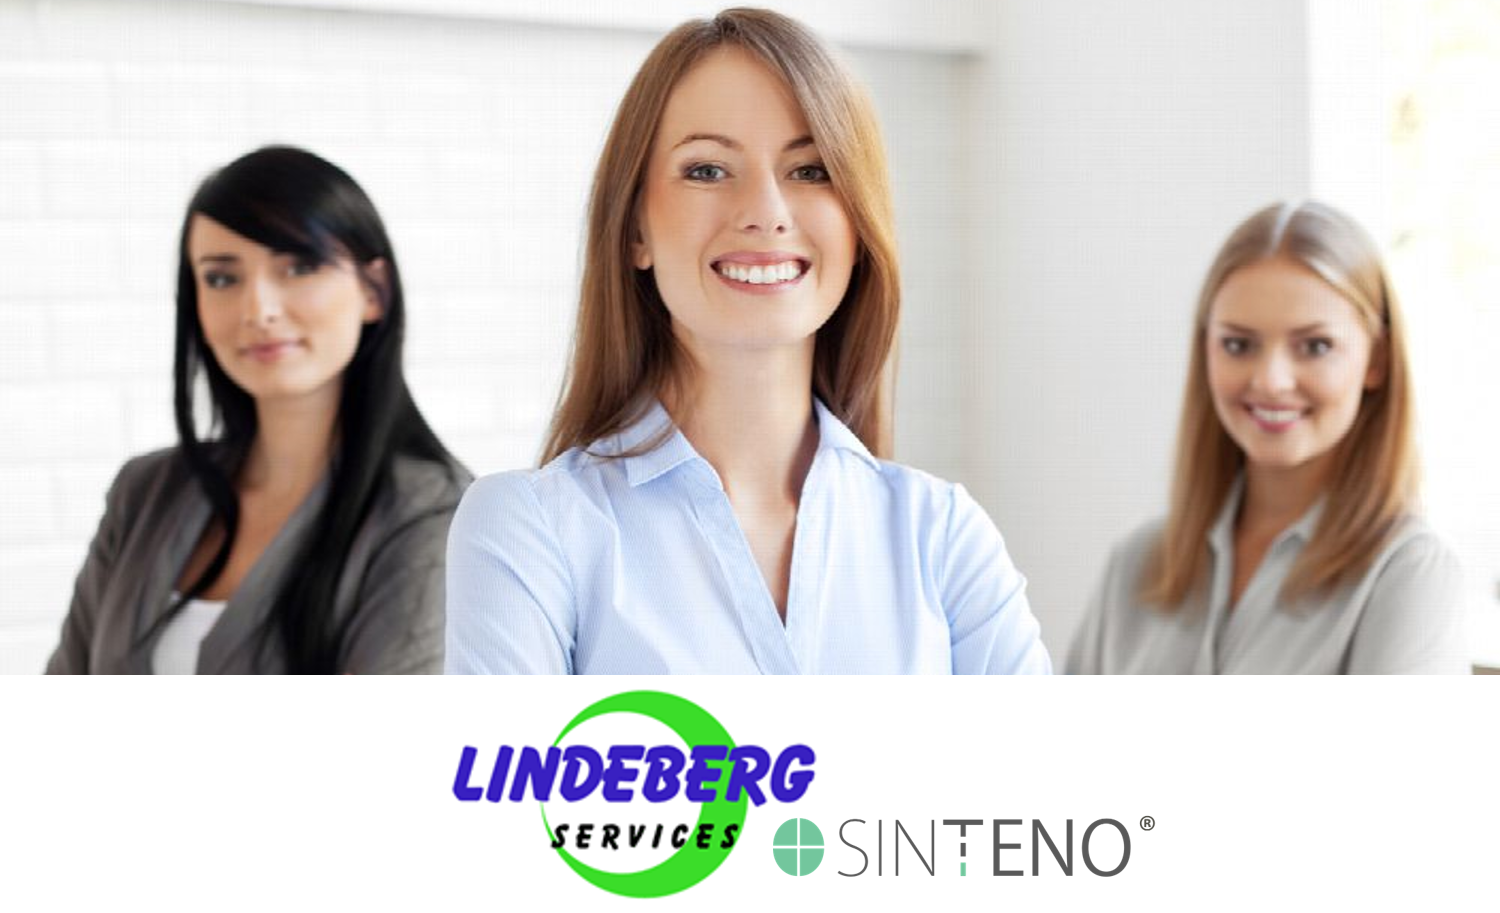 Strategische samenwerking tussen Lindeberg en Sinteno